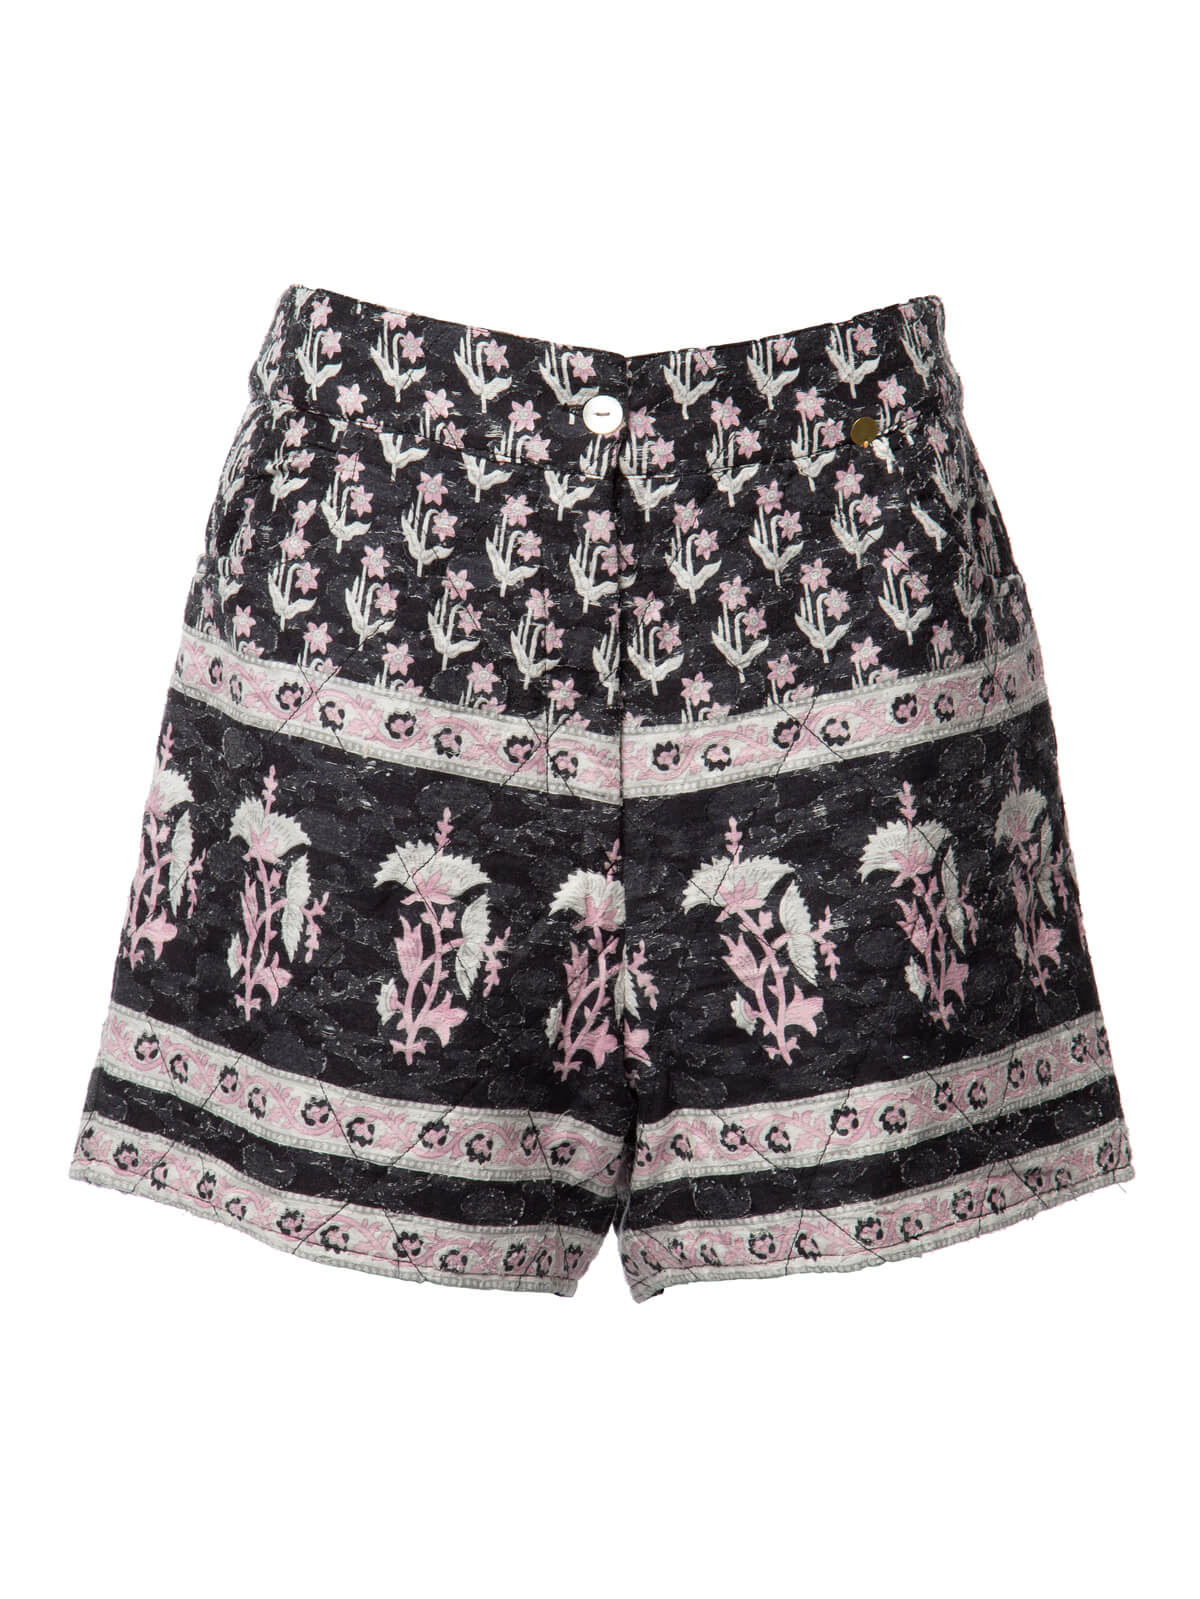 Antik Batik Women's Patterned Short, Size 10 UK, Multicolour Cotton